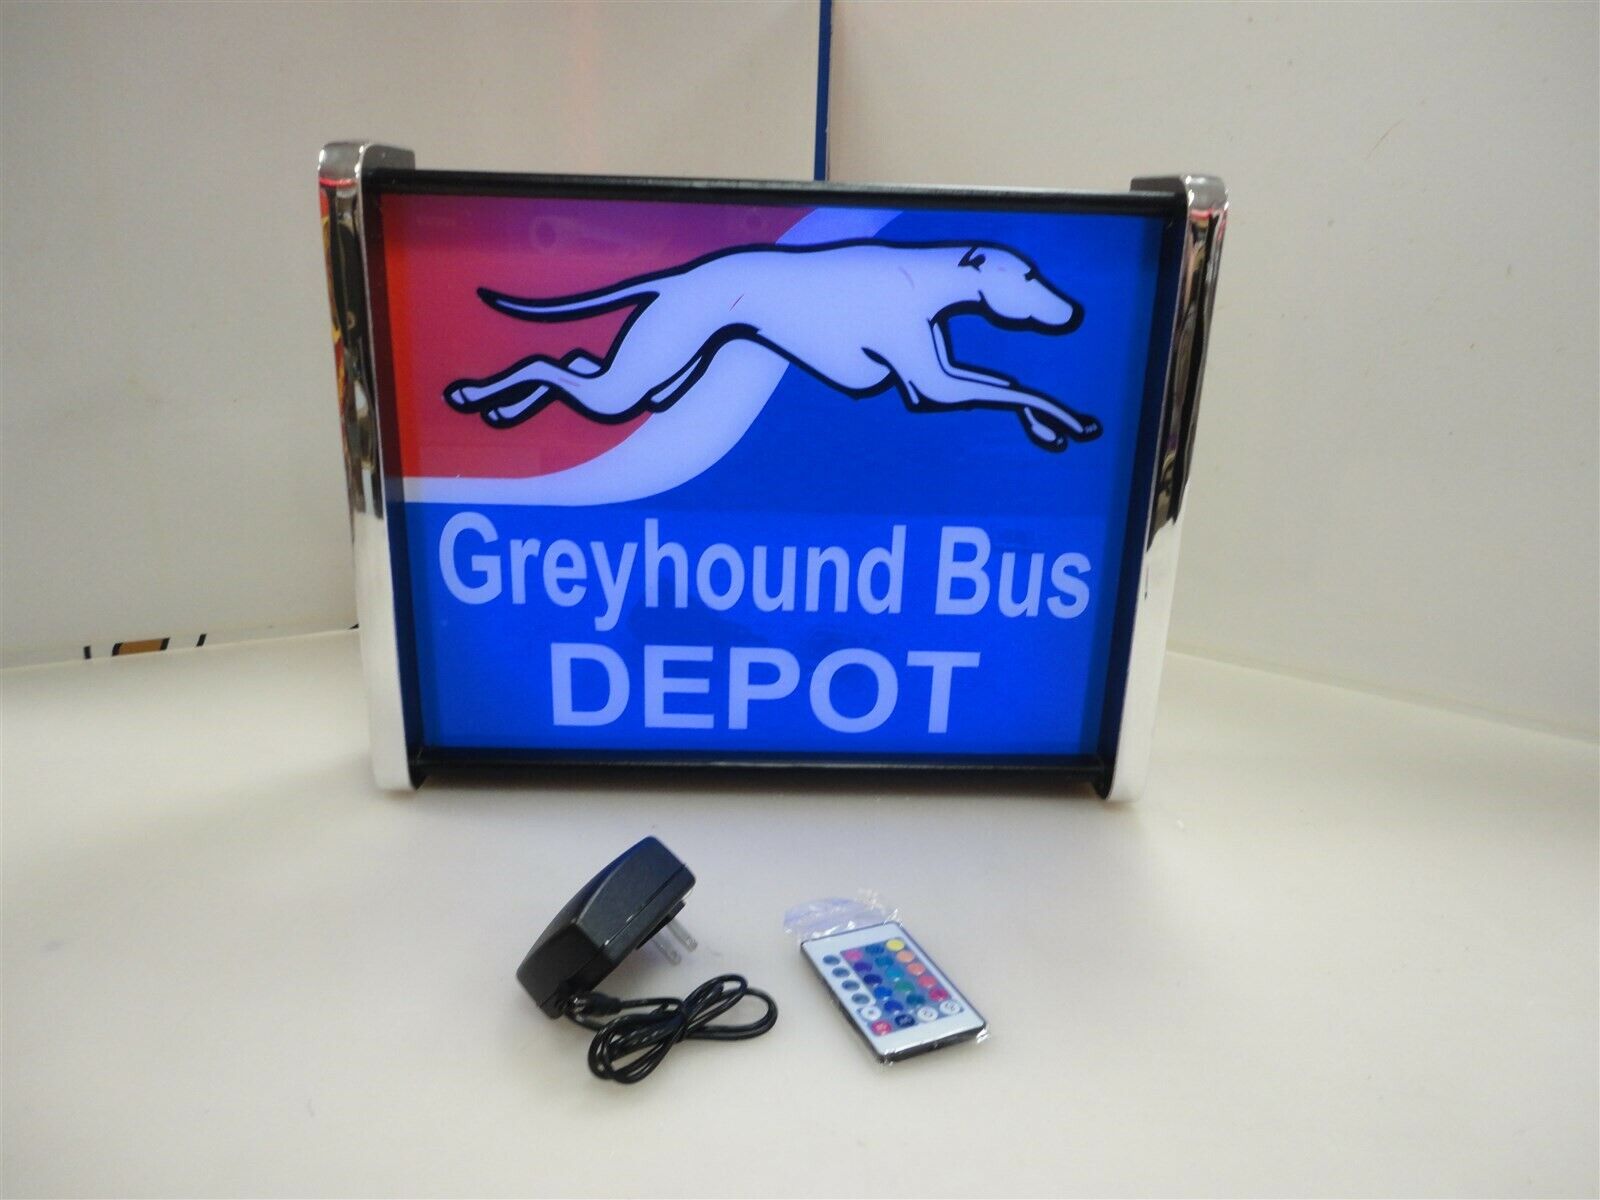 Greyhound Bus Depot Bus Stop LED Display light sign box